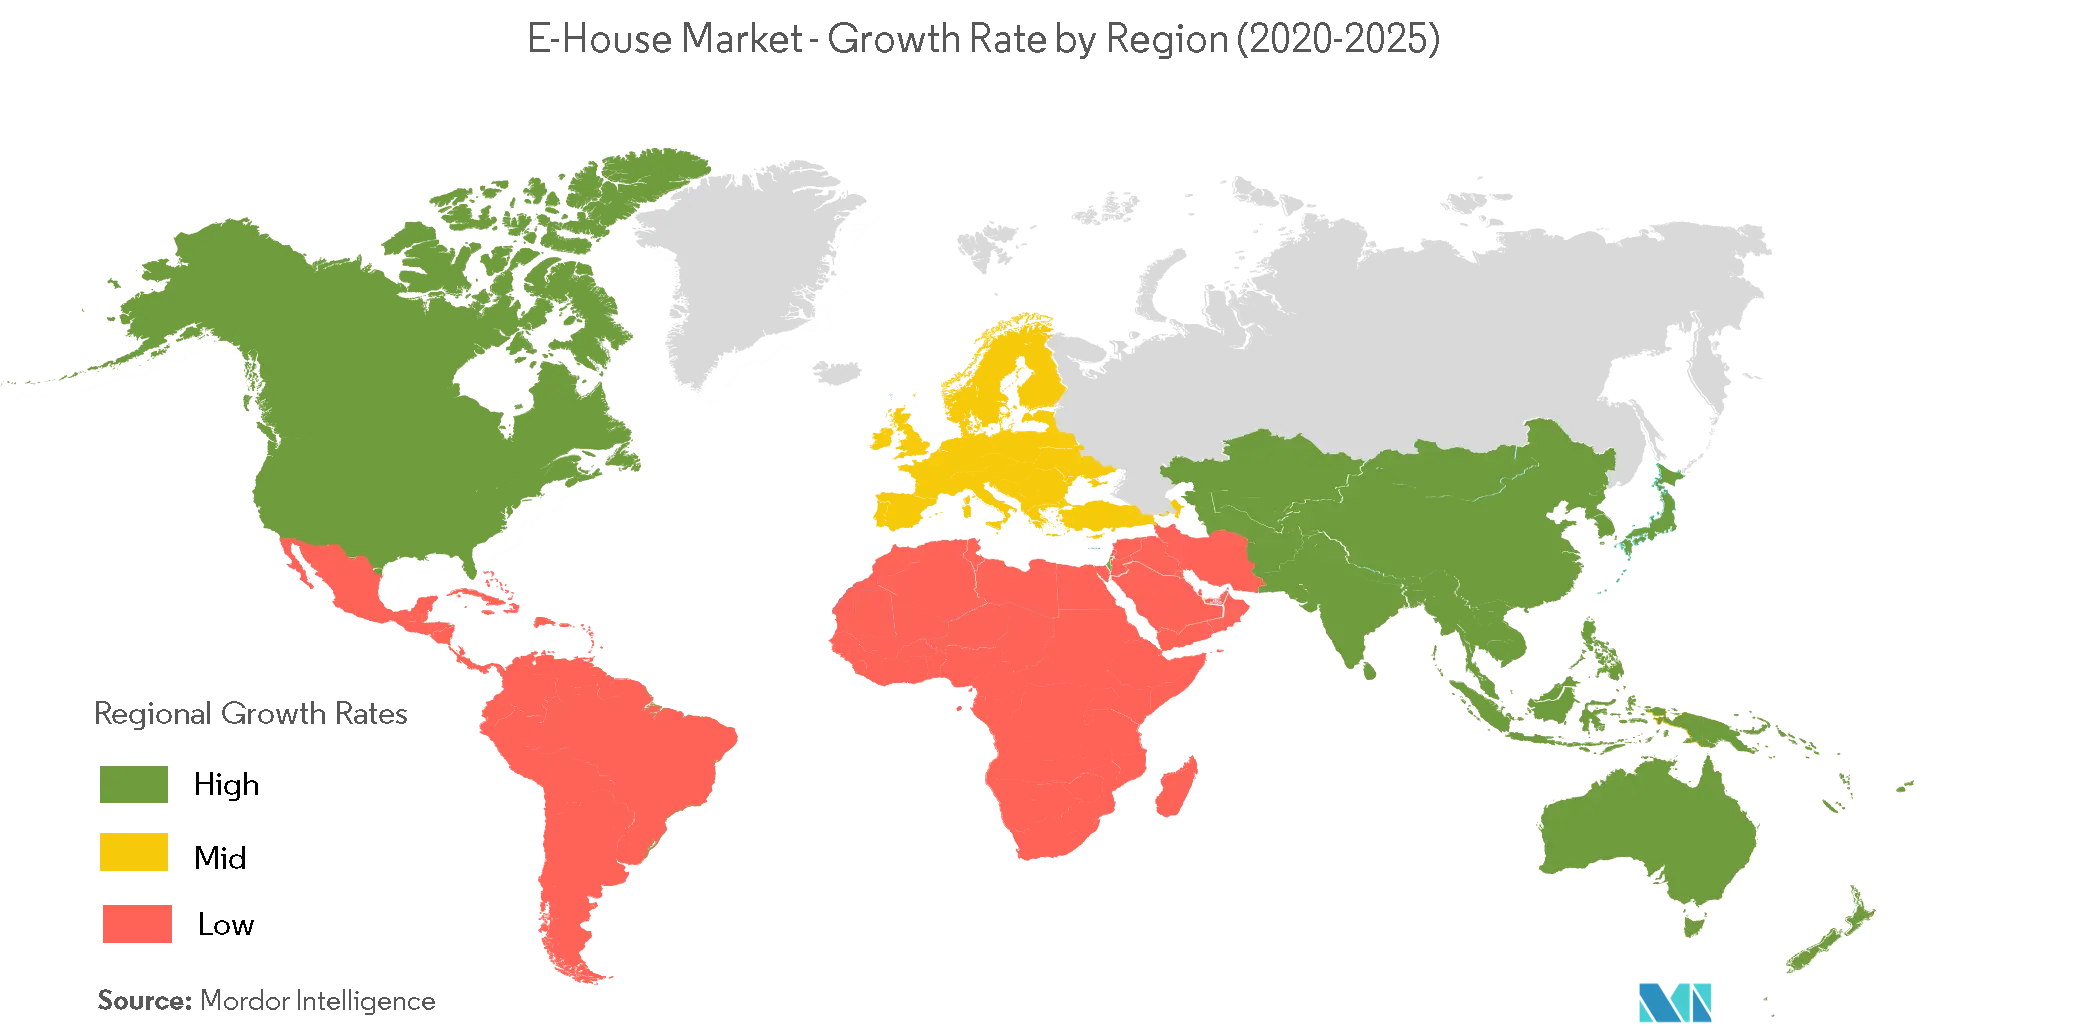 Рынок электронных домов - темпы роста по регионам (2020-2025 гг.)